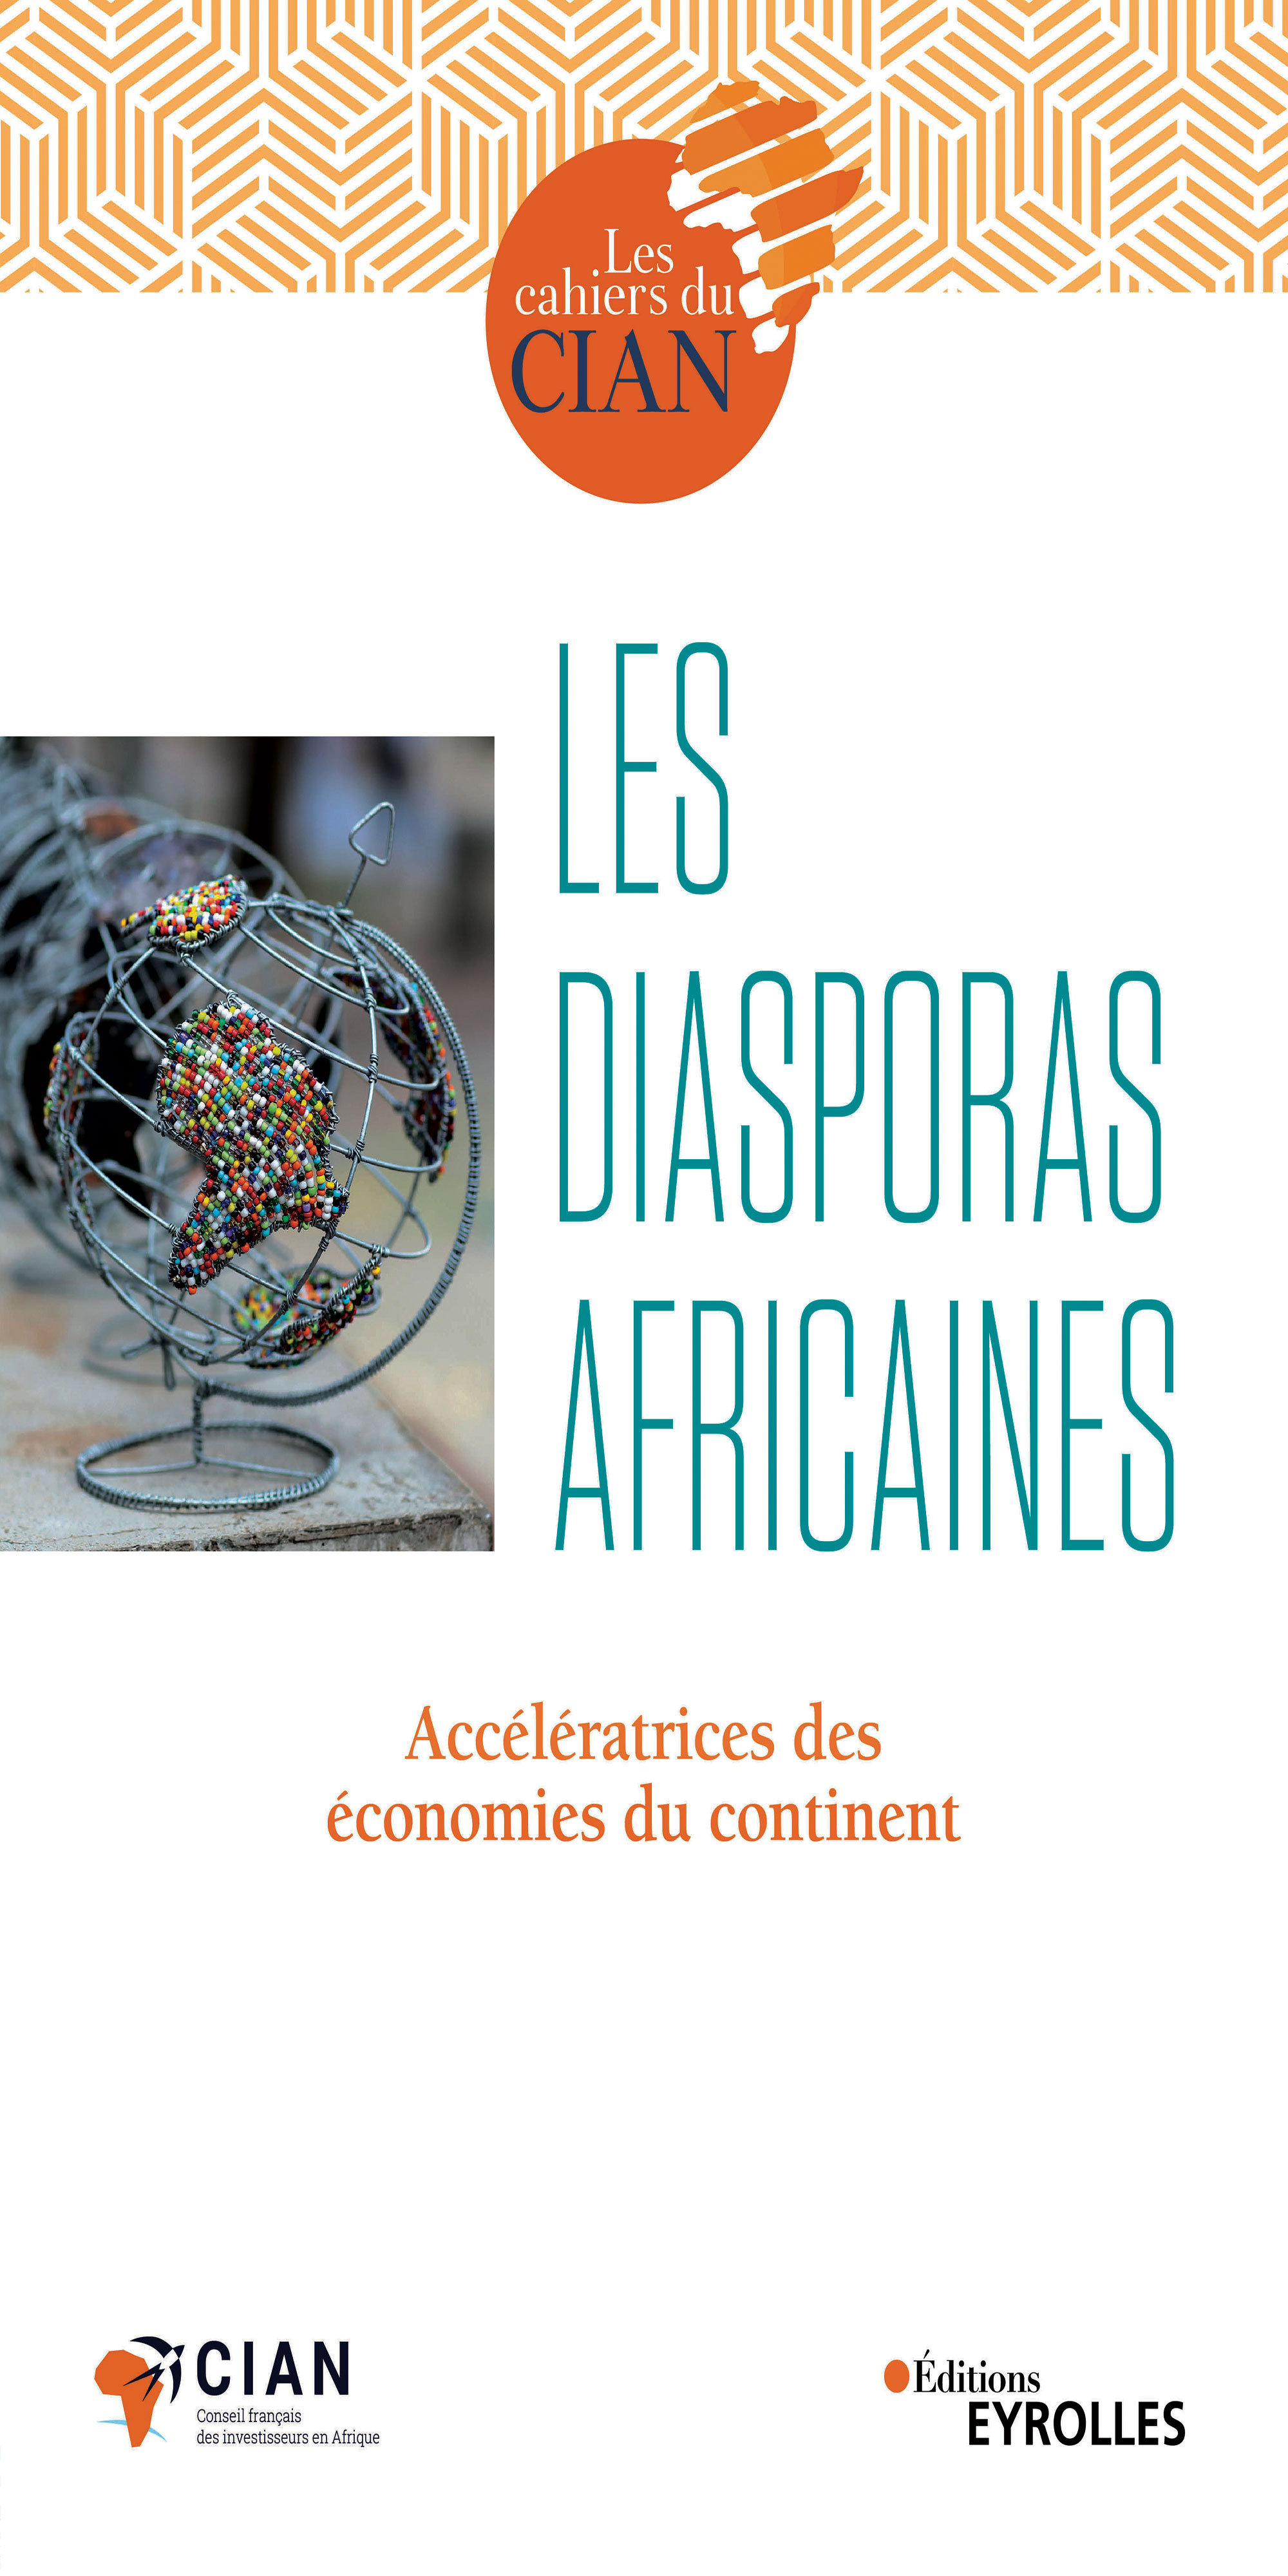 Apport de la diaspora aux économies africaines en 2019